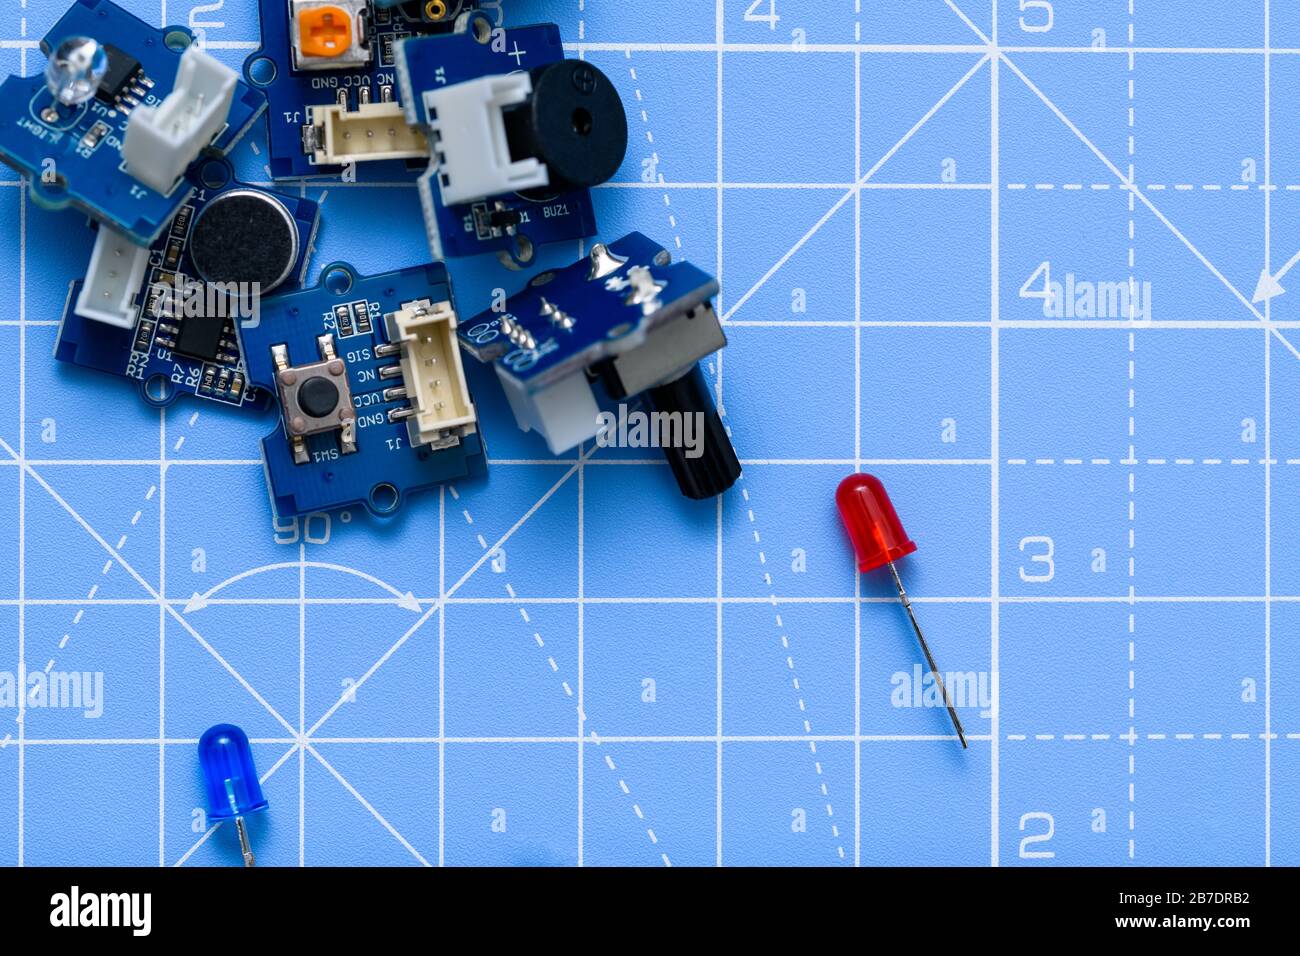 Primo piano delle schede e dei componenti elettrici a LED rosso e blu su sfondo blu. Concetto di elettronica, scienza, industria o istruzione Foto Stock